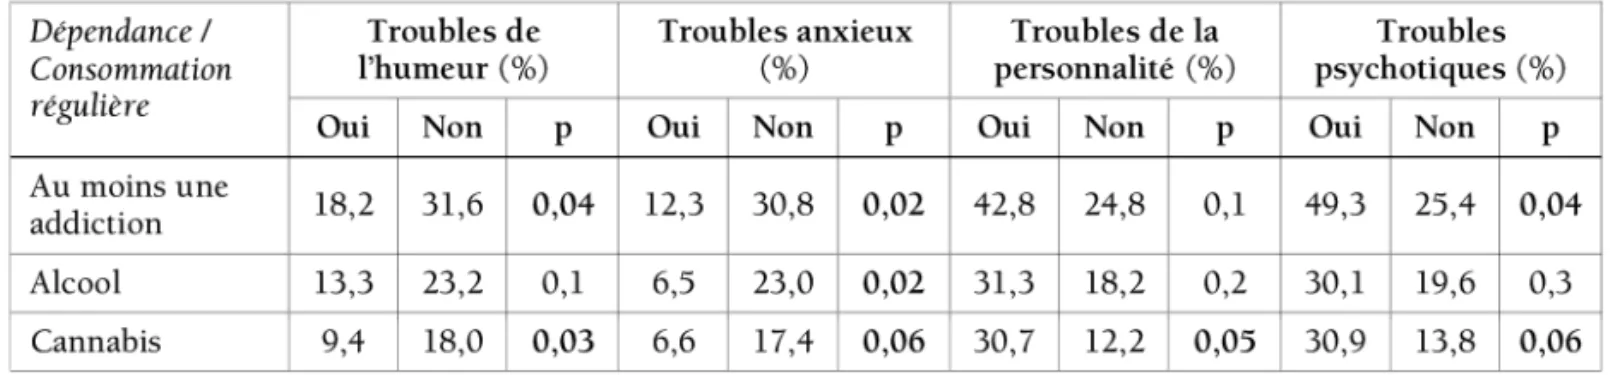 Tableau 27 : Taux de comorbidités entre troubles psychiatriques et addictions chez les ersonnes sans logement personnel d’Ile de France, enquête Samenta, 2009.